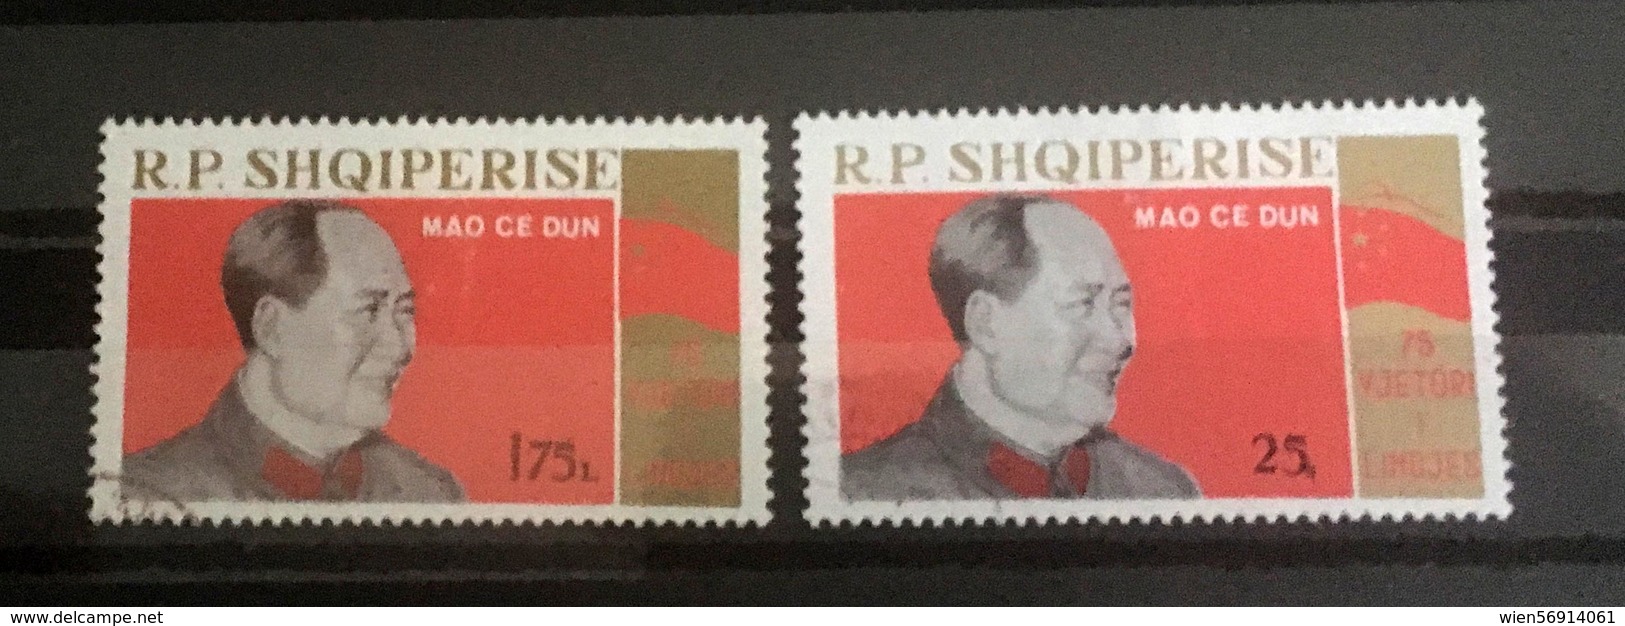 Mao China Albania - Mao Tse-Tung